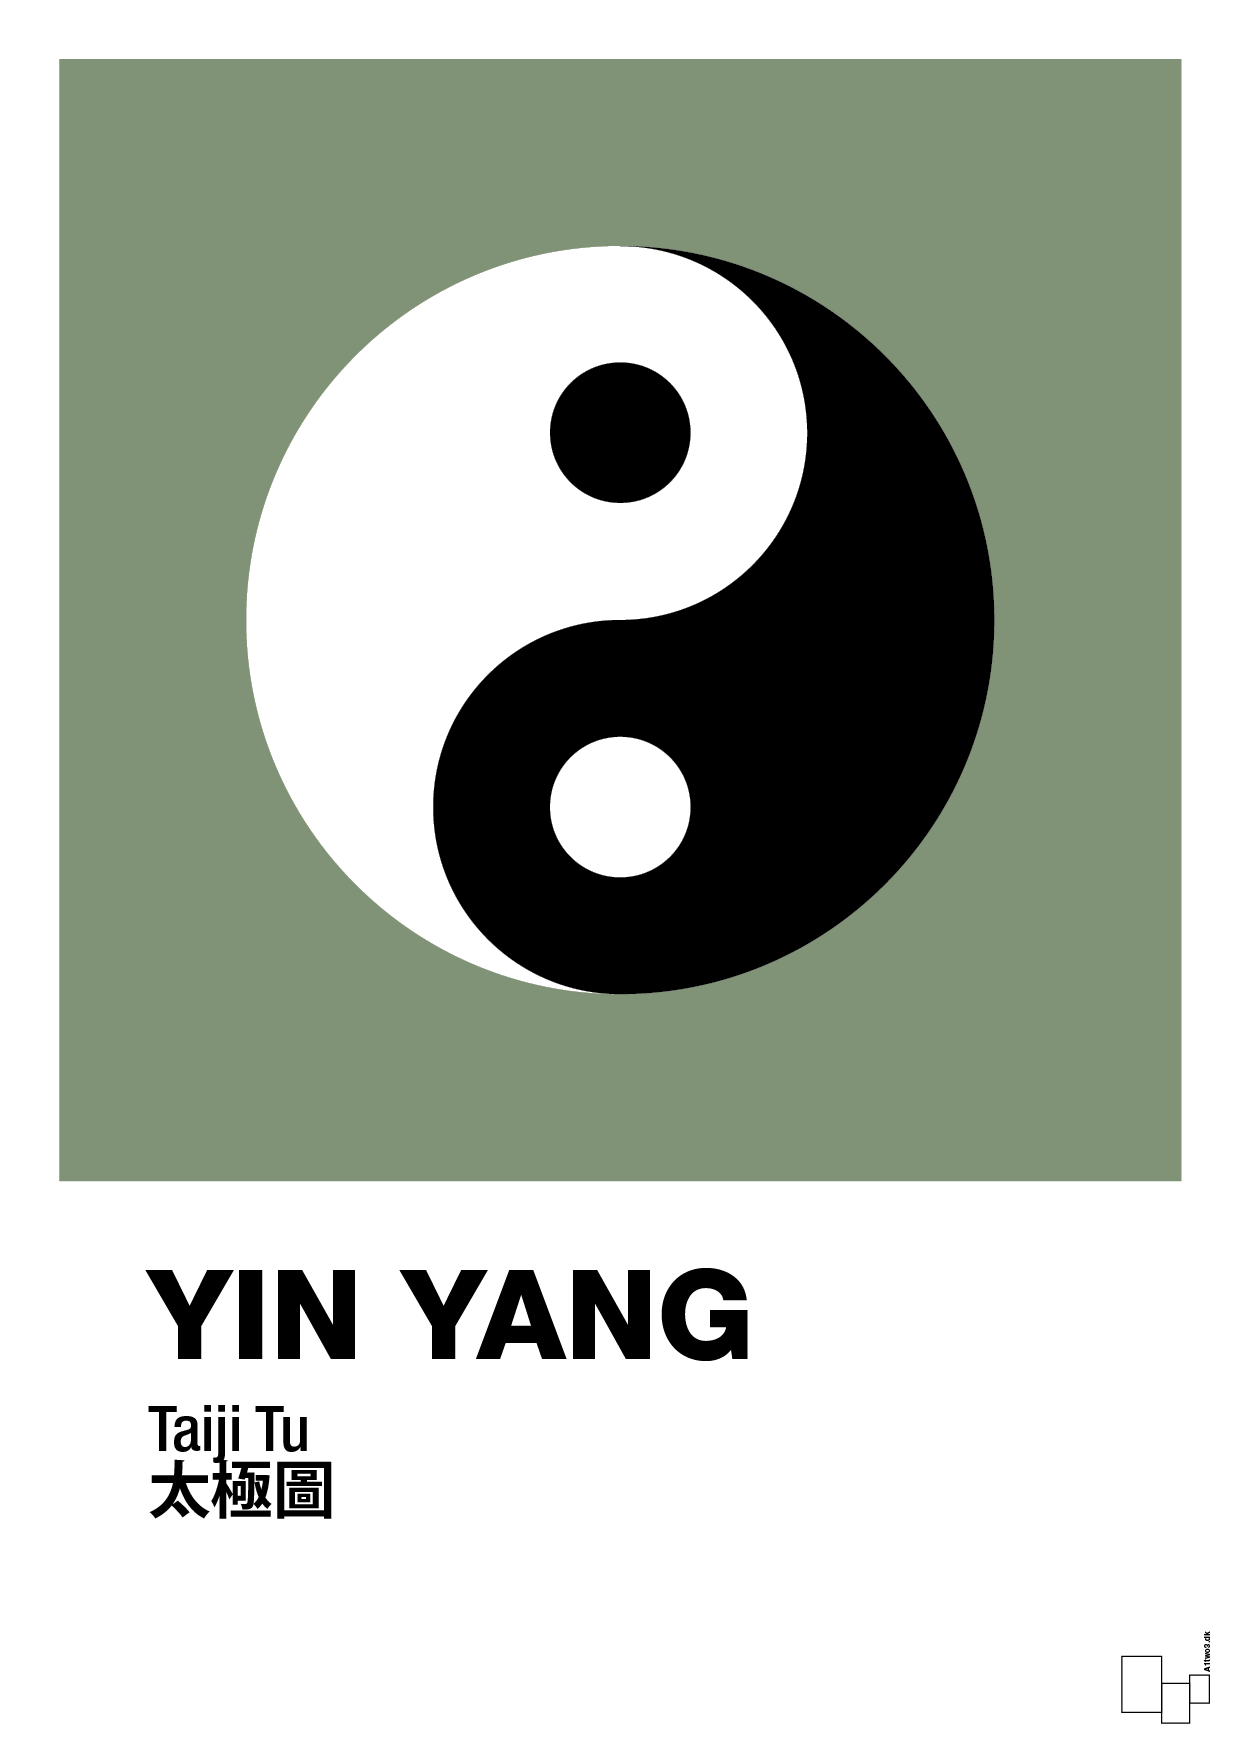 yin yang - Plakat med Videnskab i Jade